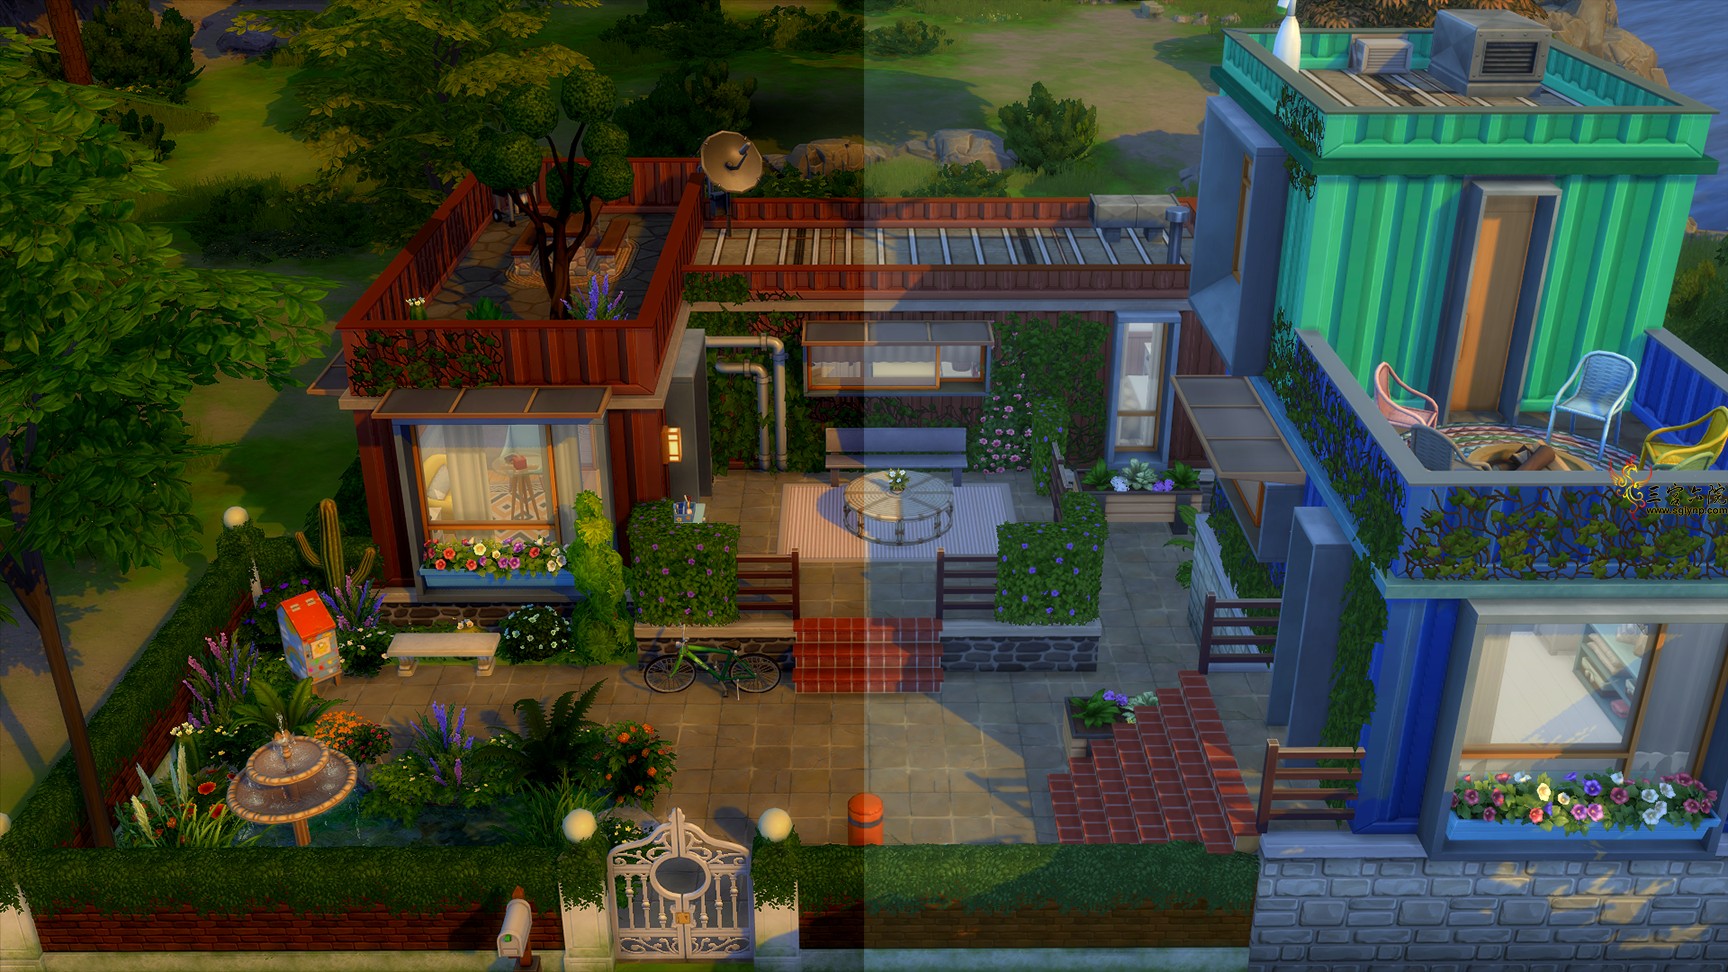 Sims 4 Screenshot 2021.01.11 - 19.47.56.33.png